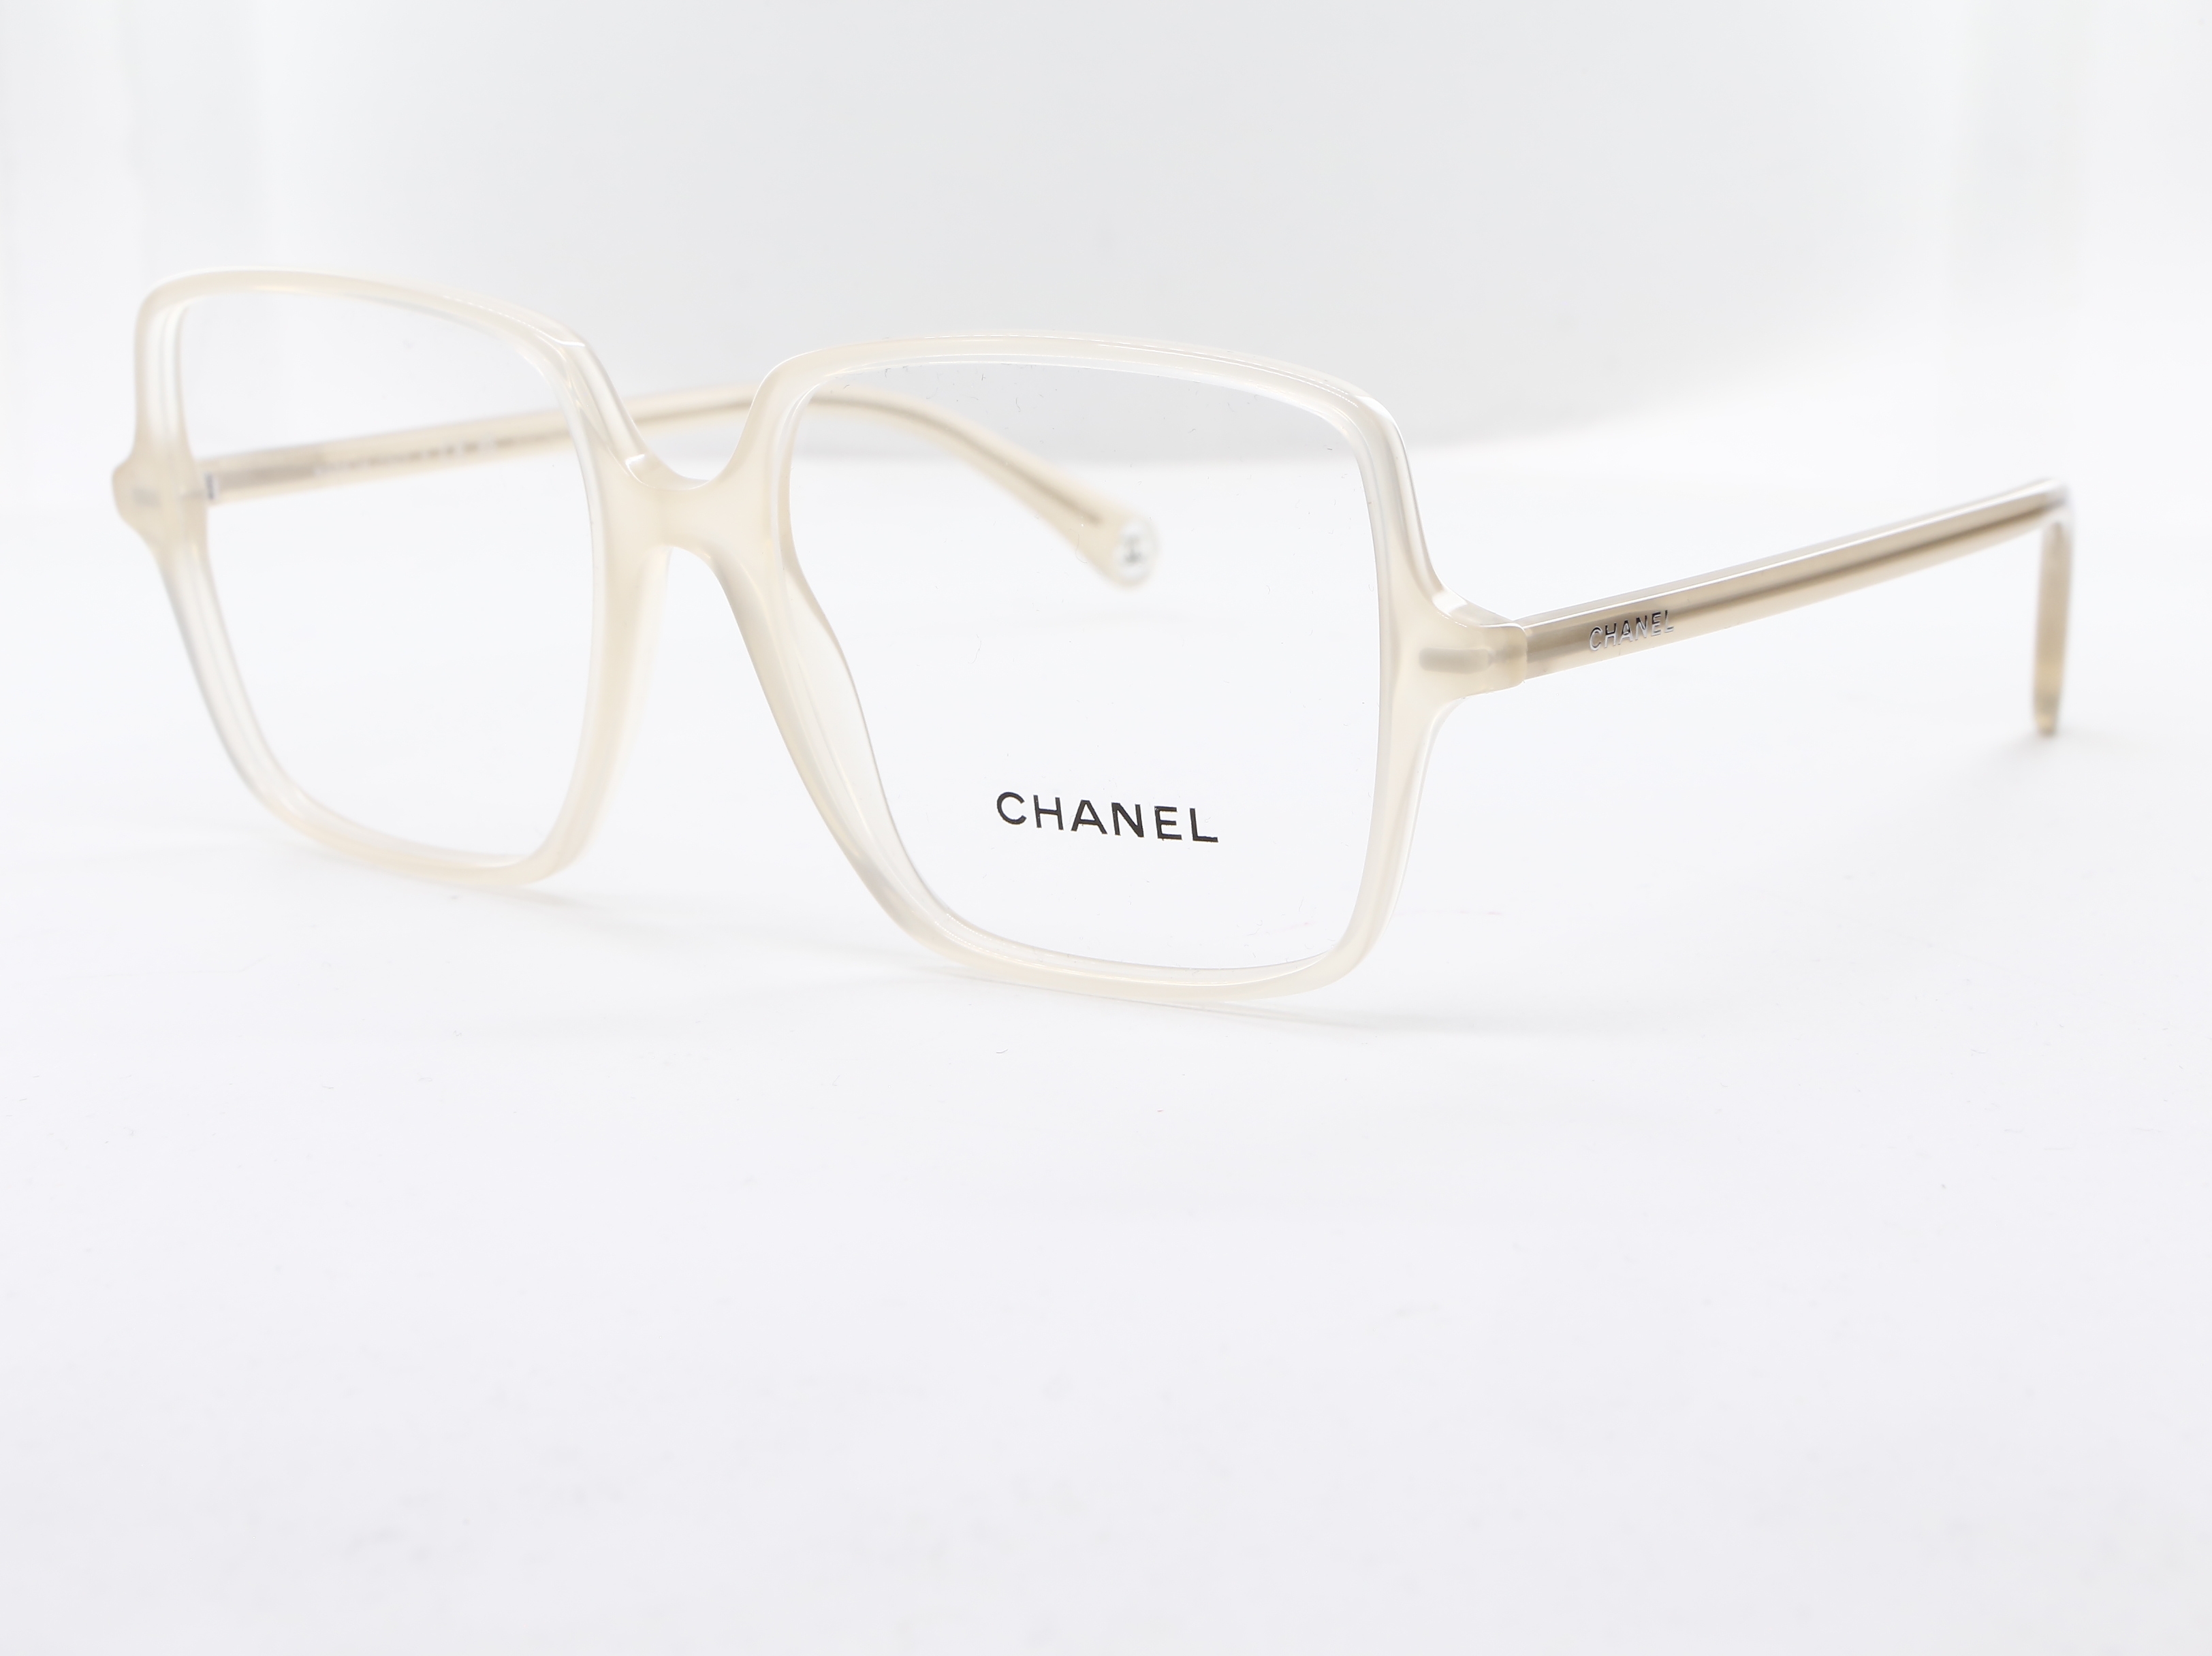 Chanel - ref: 89422